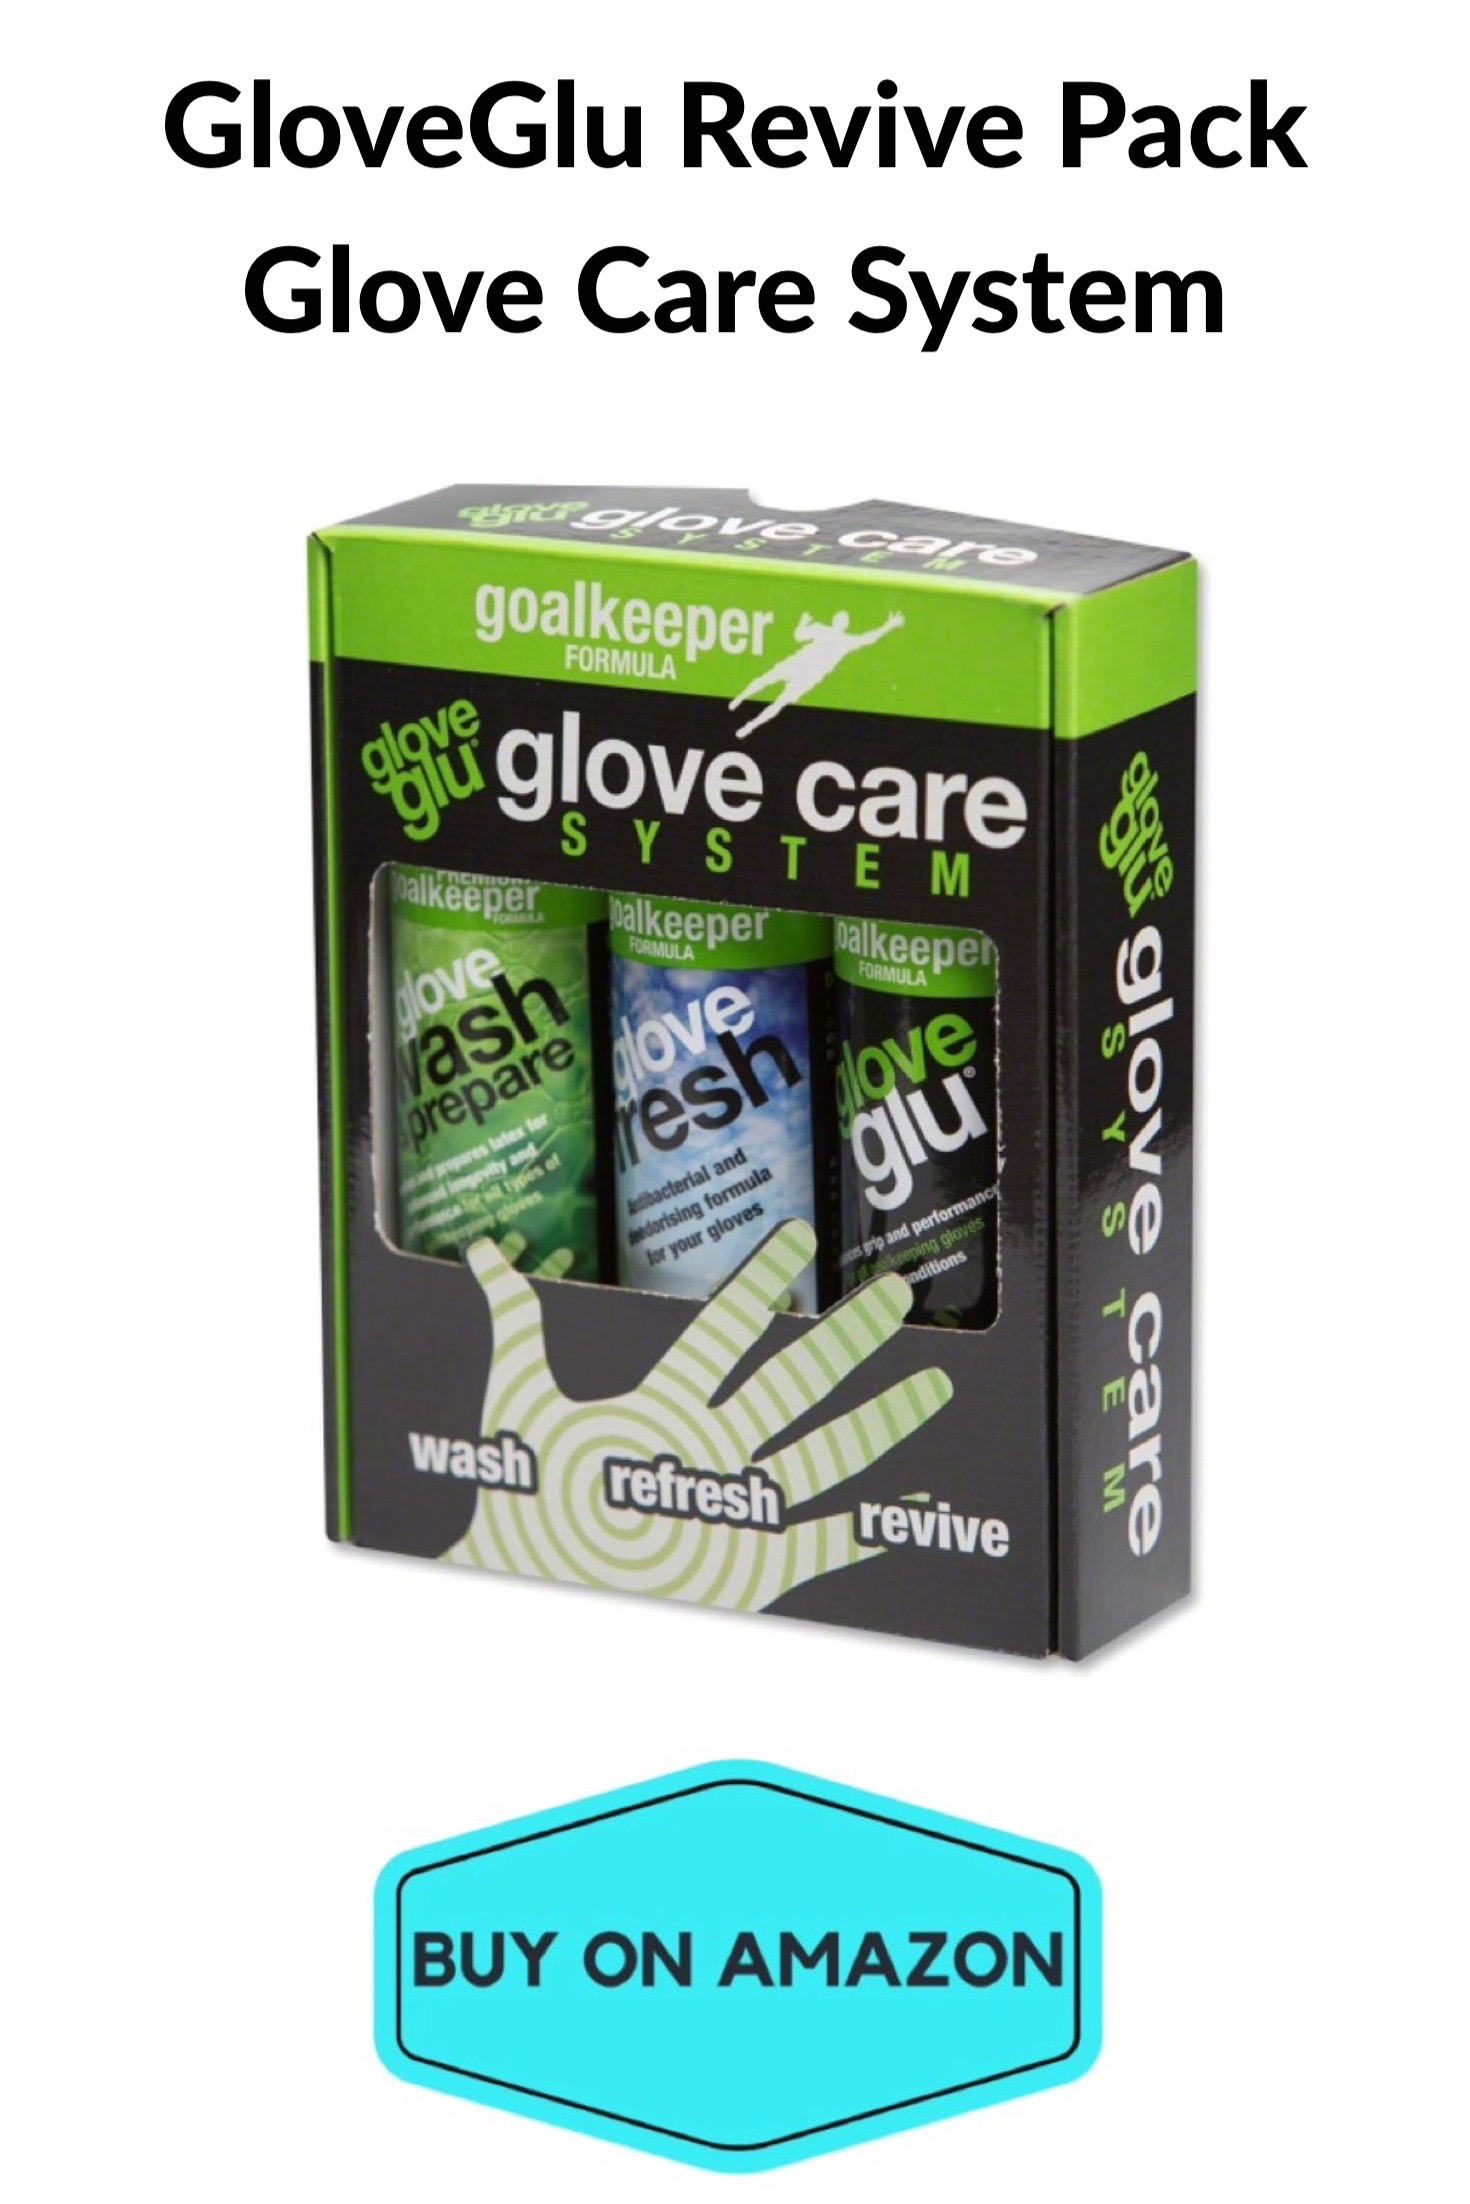 GloveGlu Revive Pack Glove Care System